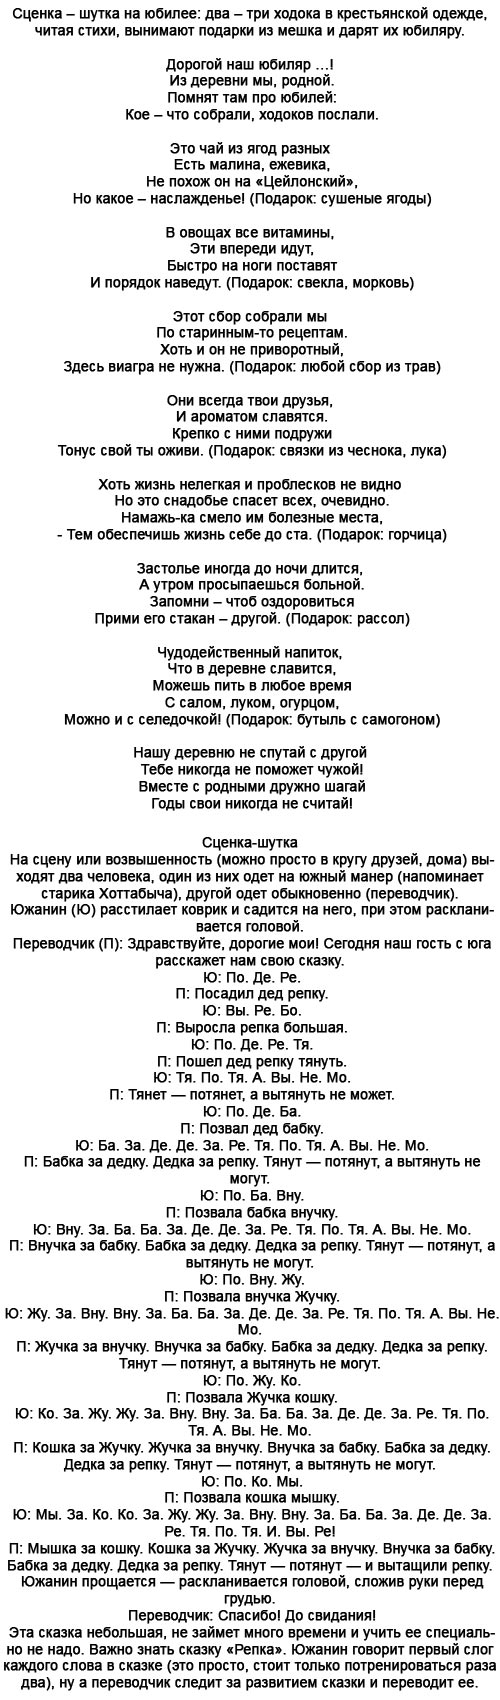 http://centrprazdnika.ru/uploads/posts/2012-06/1339999676_shutochnye-scenki-na-yubiley.jpg